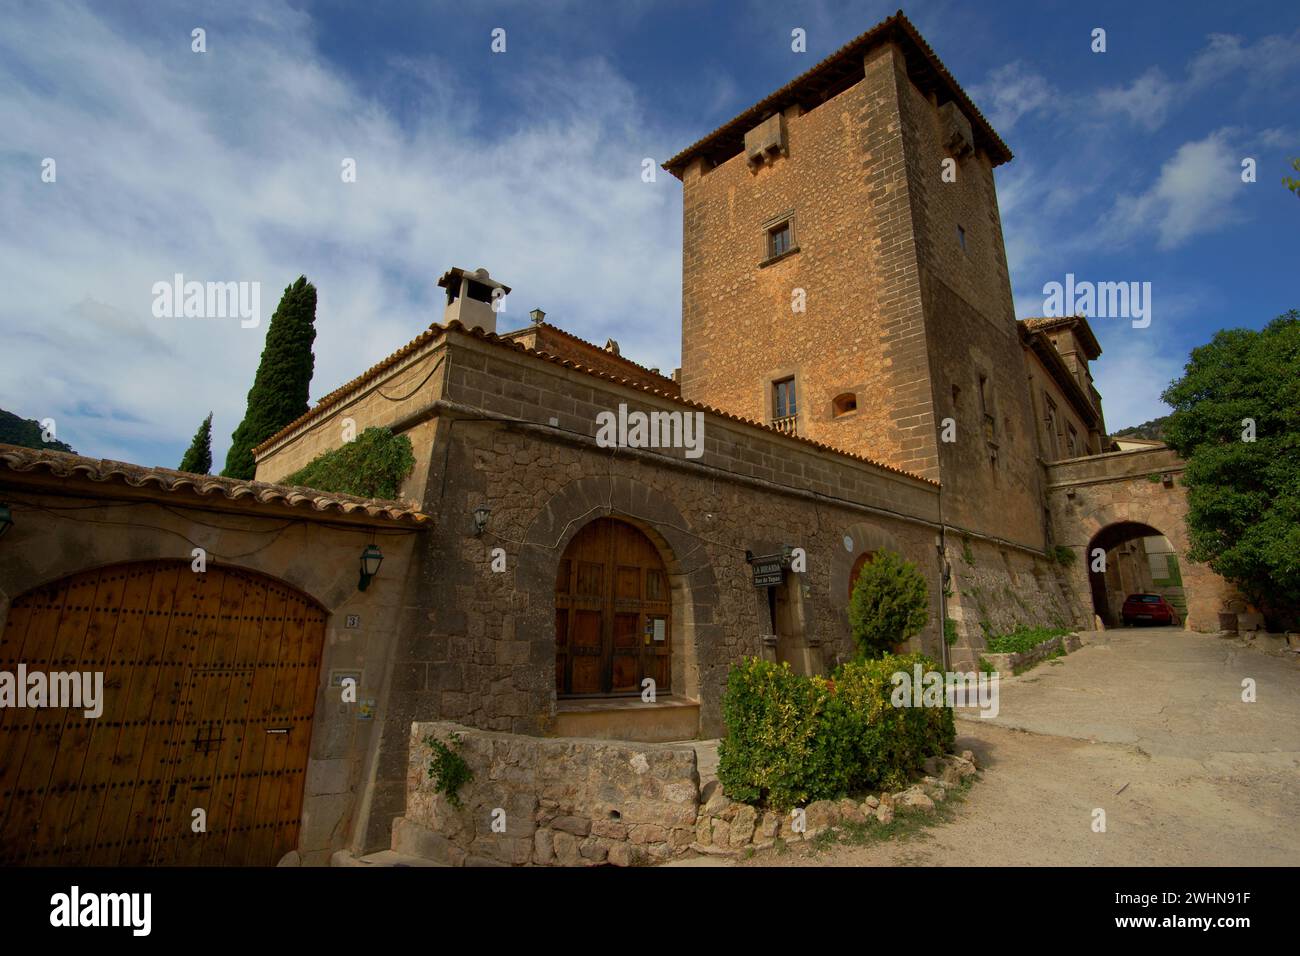 Valldemossa.Palacio del rei Sancho.Sierra de Tramuntana.Mallorca.Illes Balears.EspaÃ±a. Stock Photo